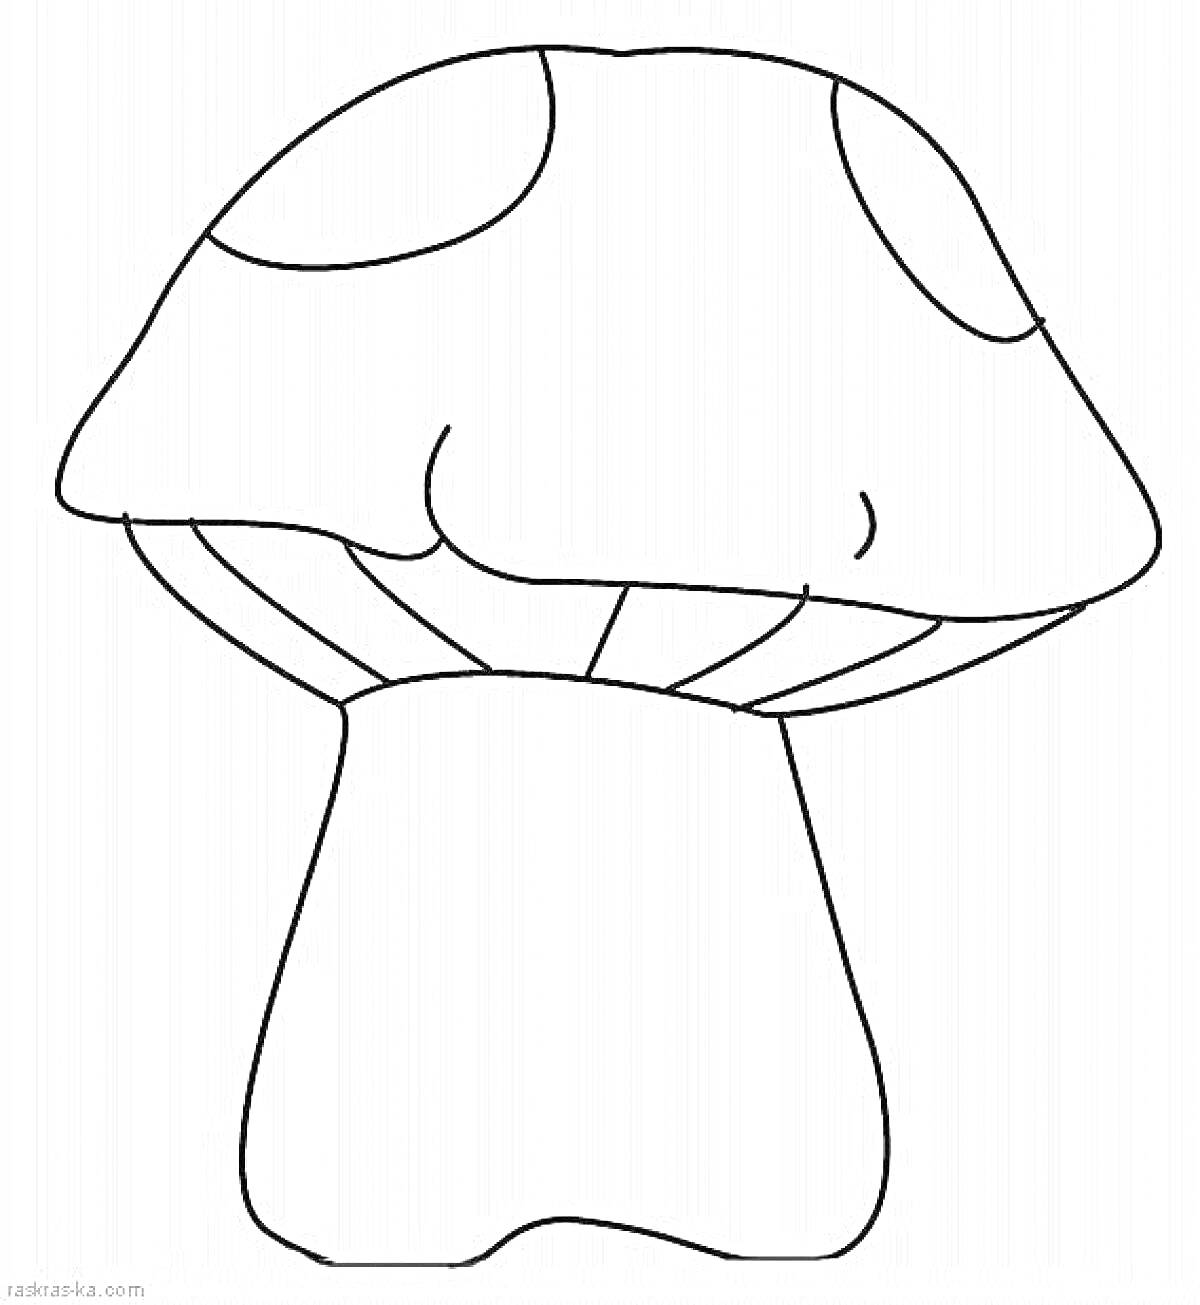 Раскраска гриб с пятнистой шляпкой